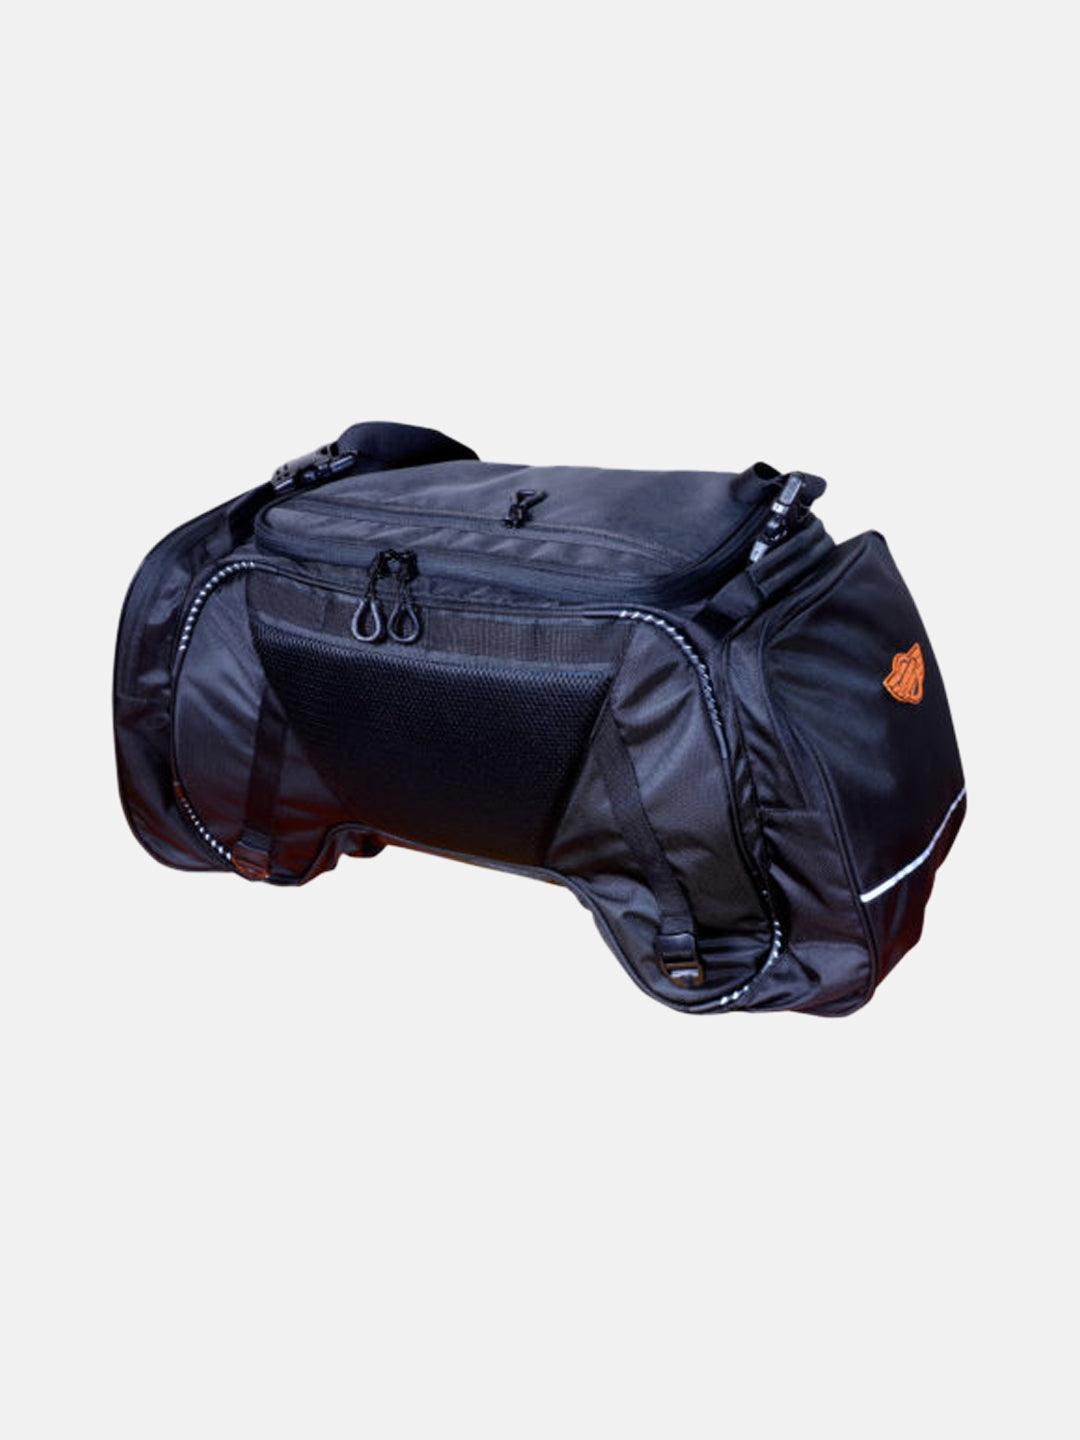 Guardian Gears Rhino Tail Bag - Moto Modz